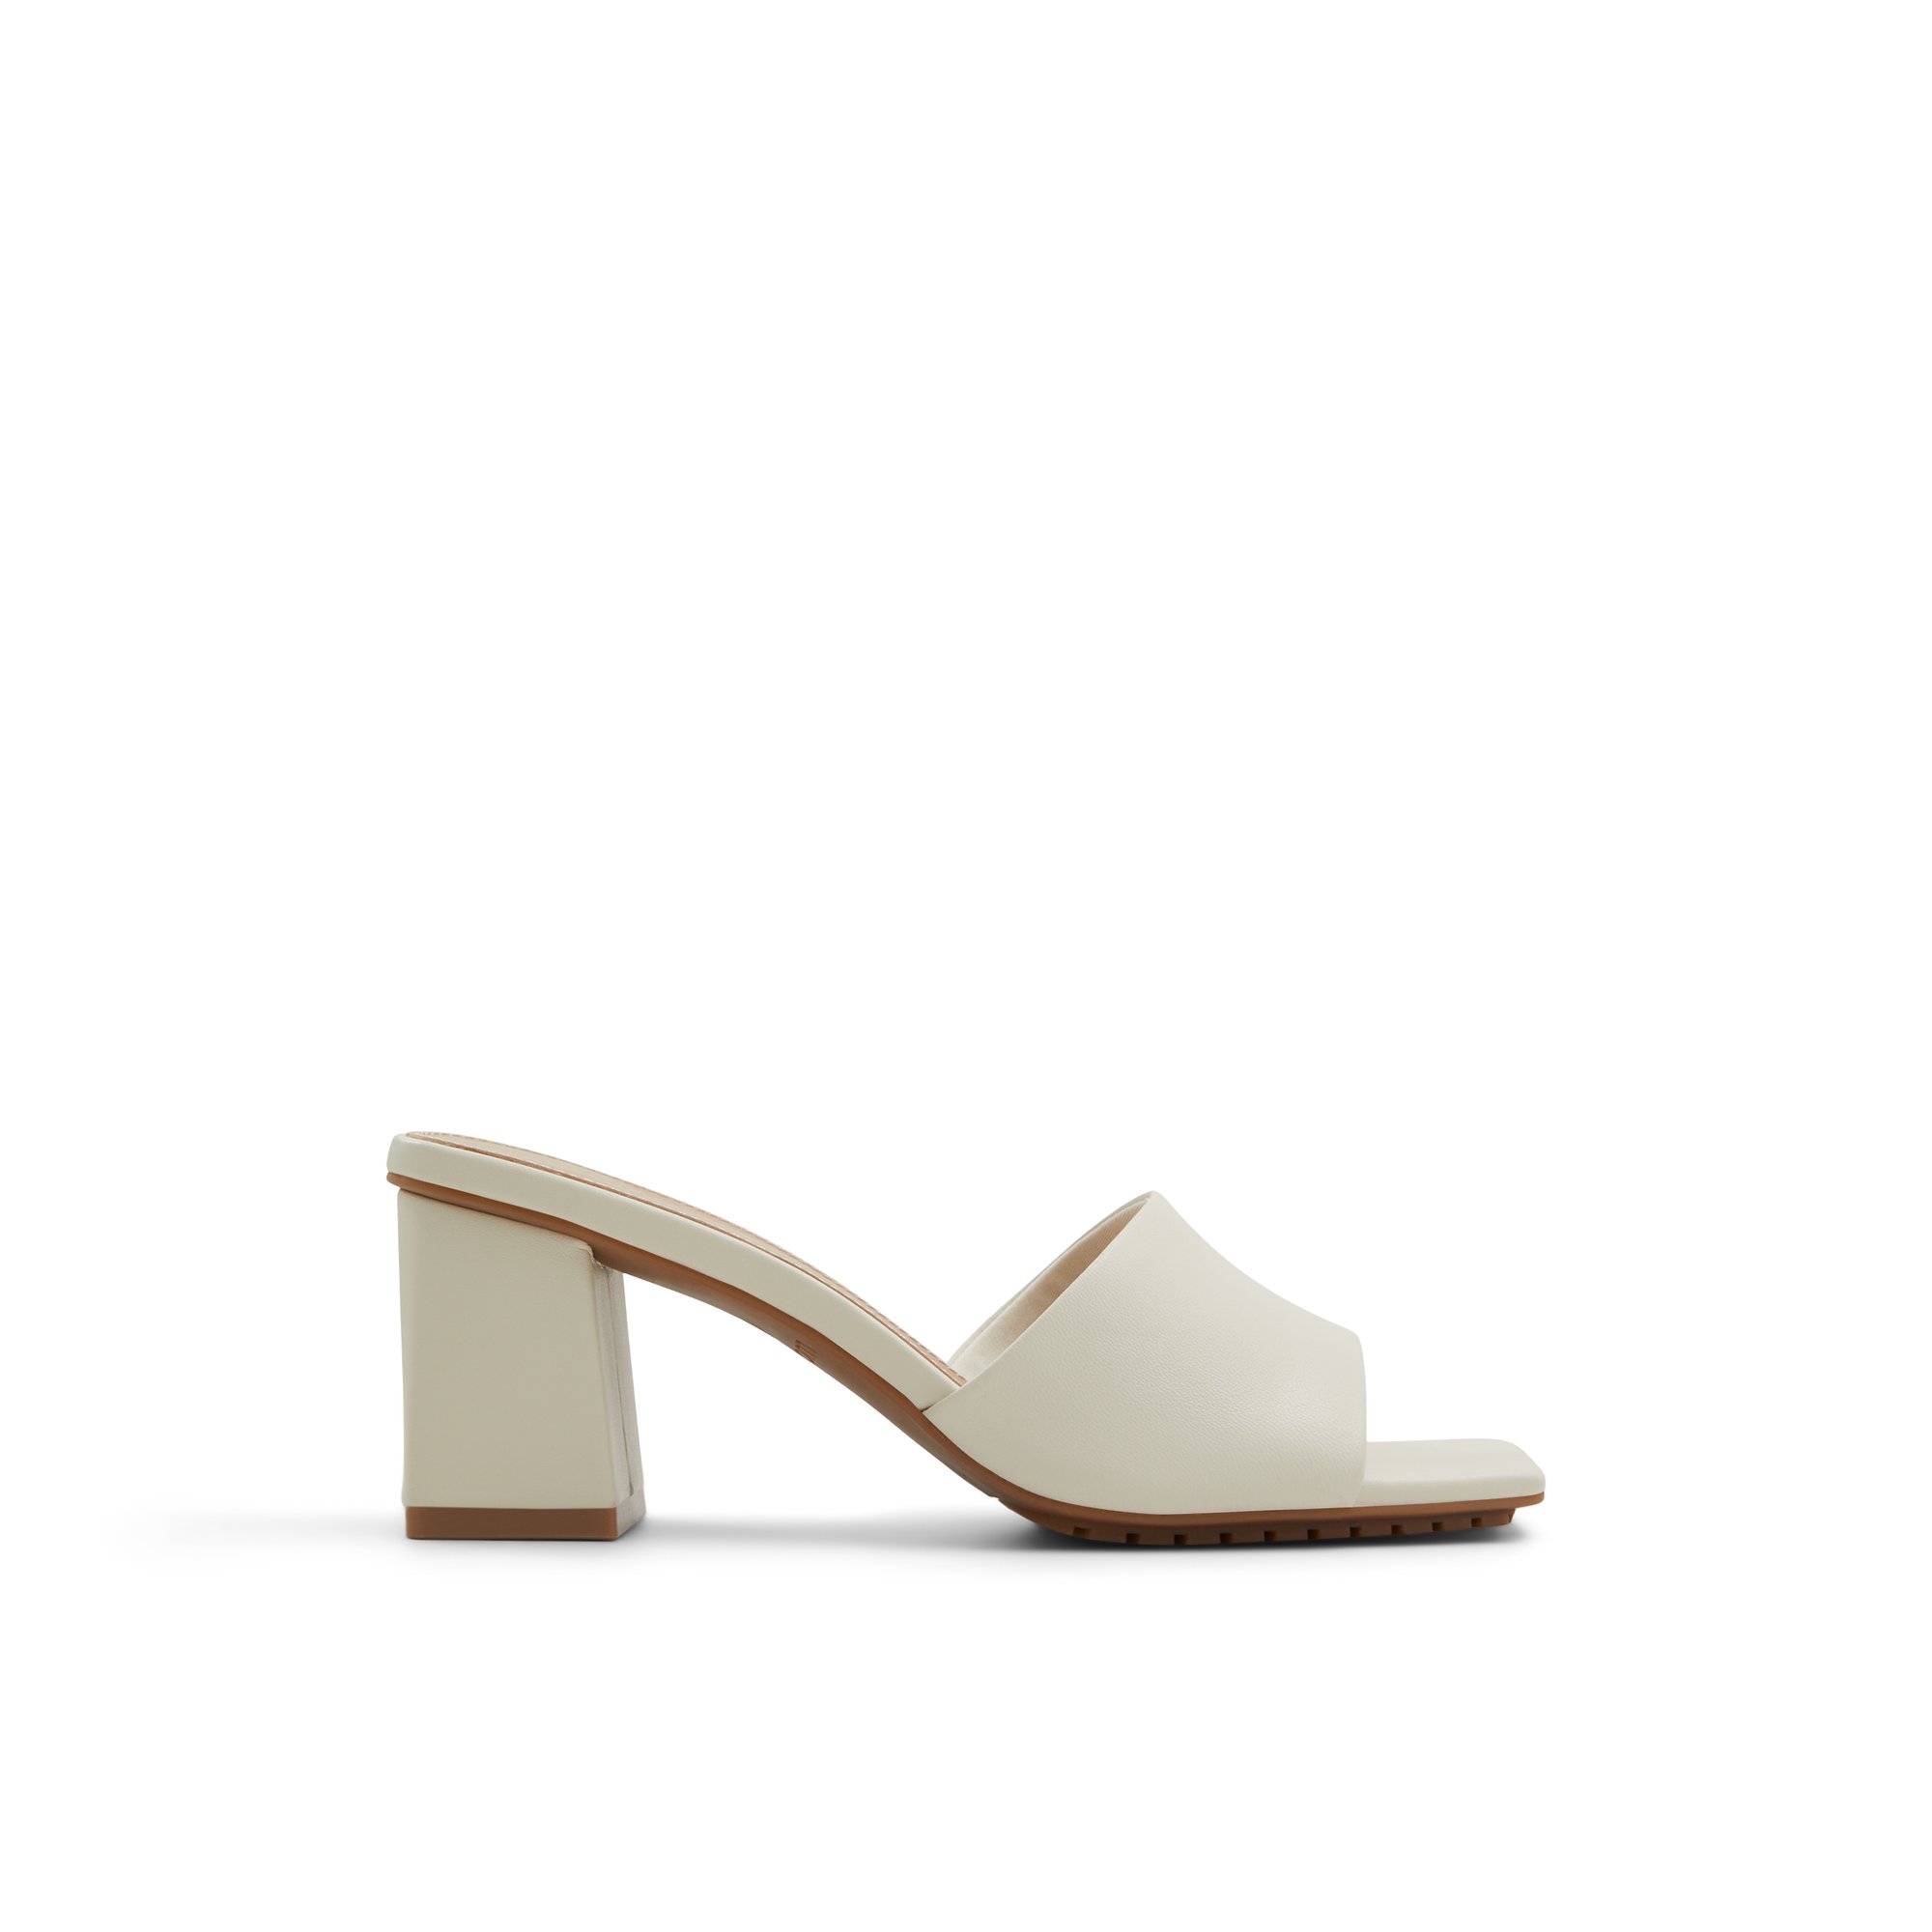 Luca Ferri Barg - Women's Footwear Sandals Heels